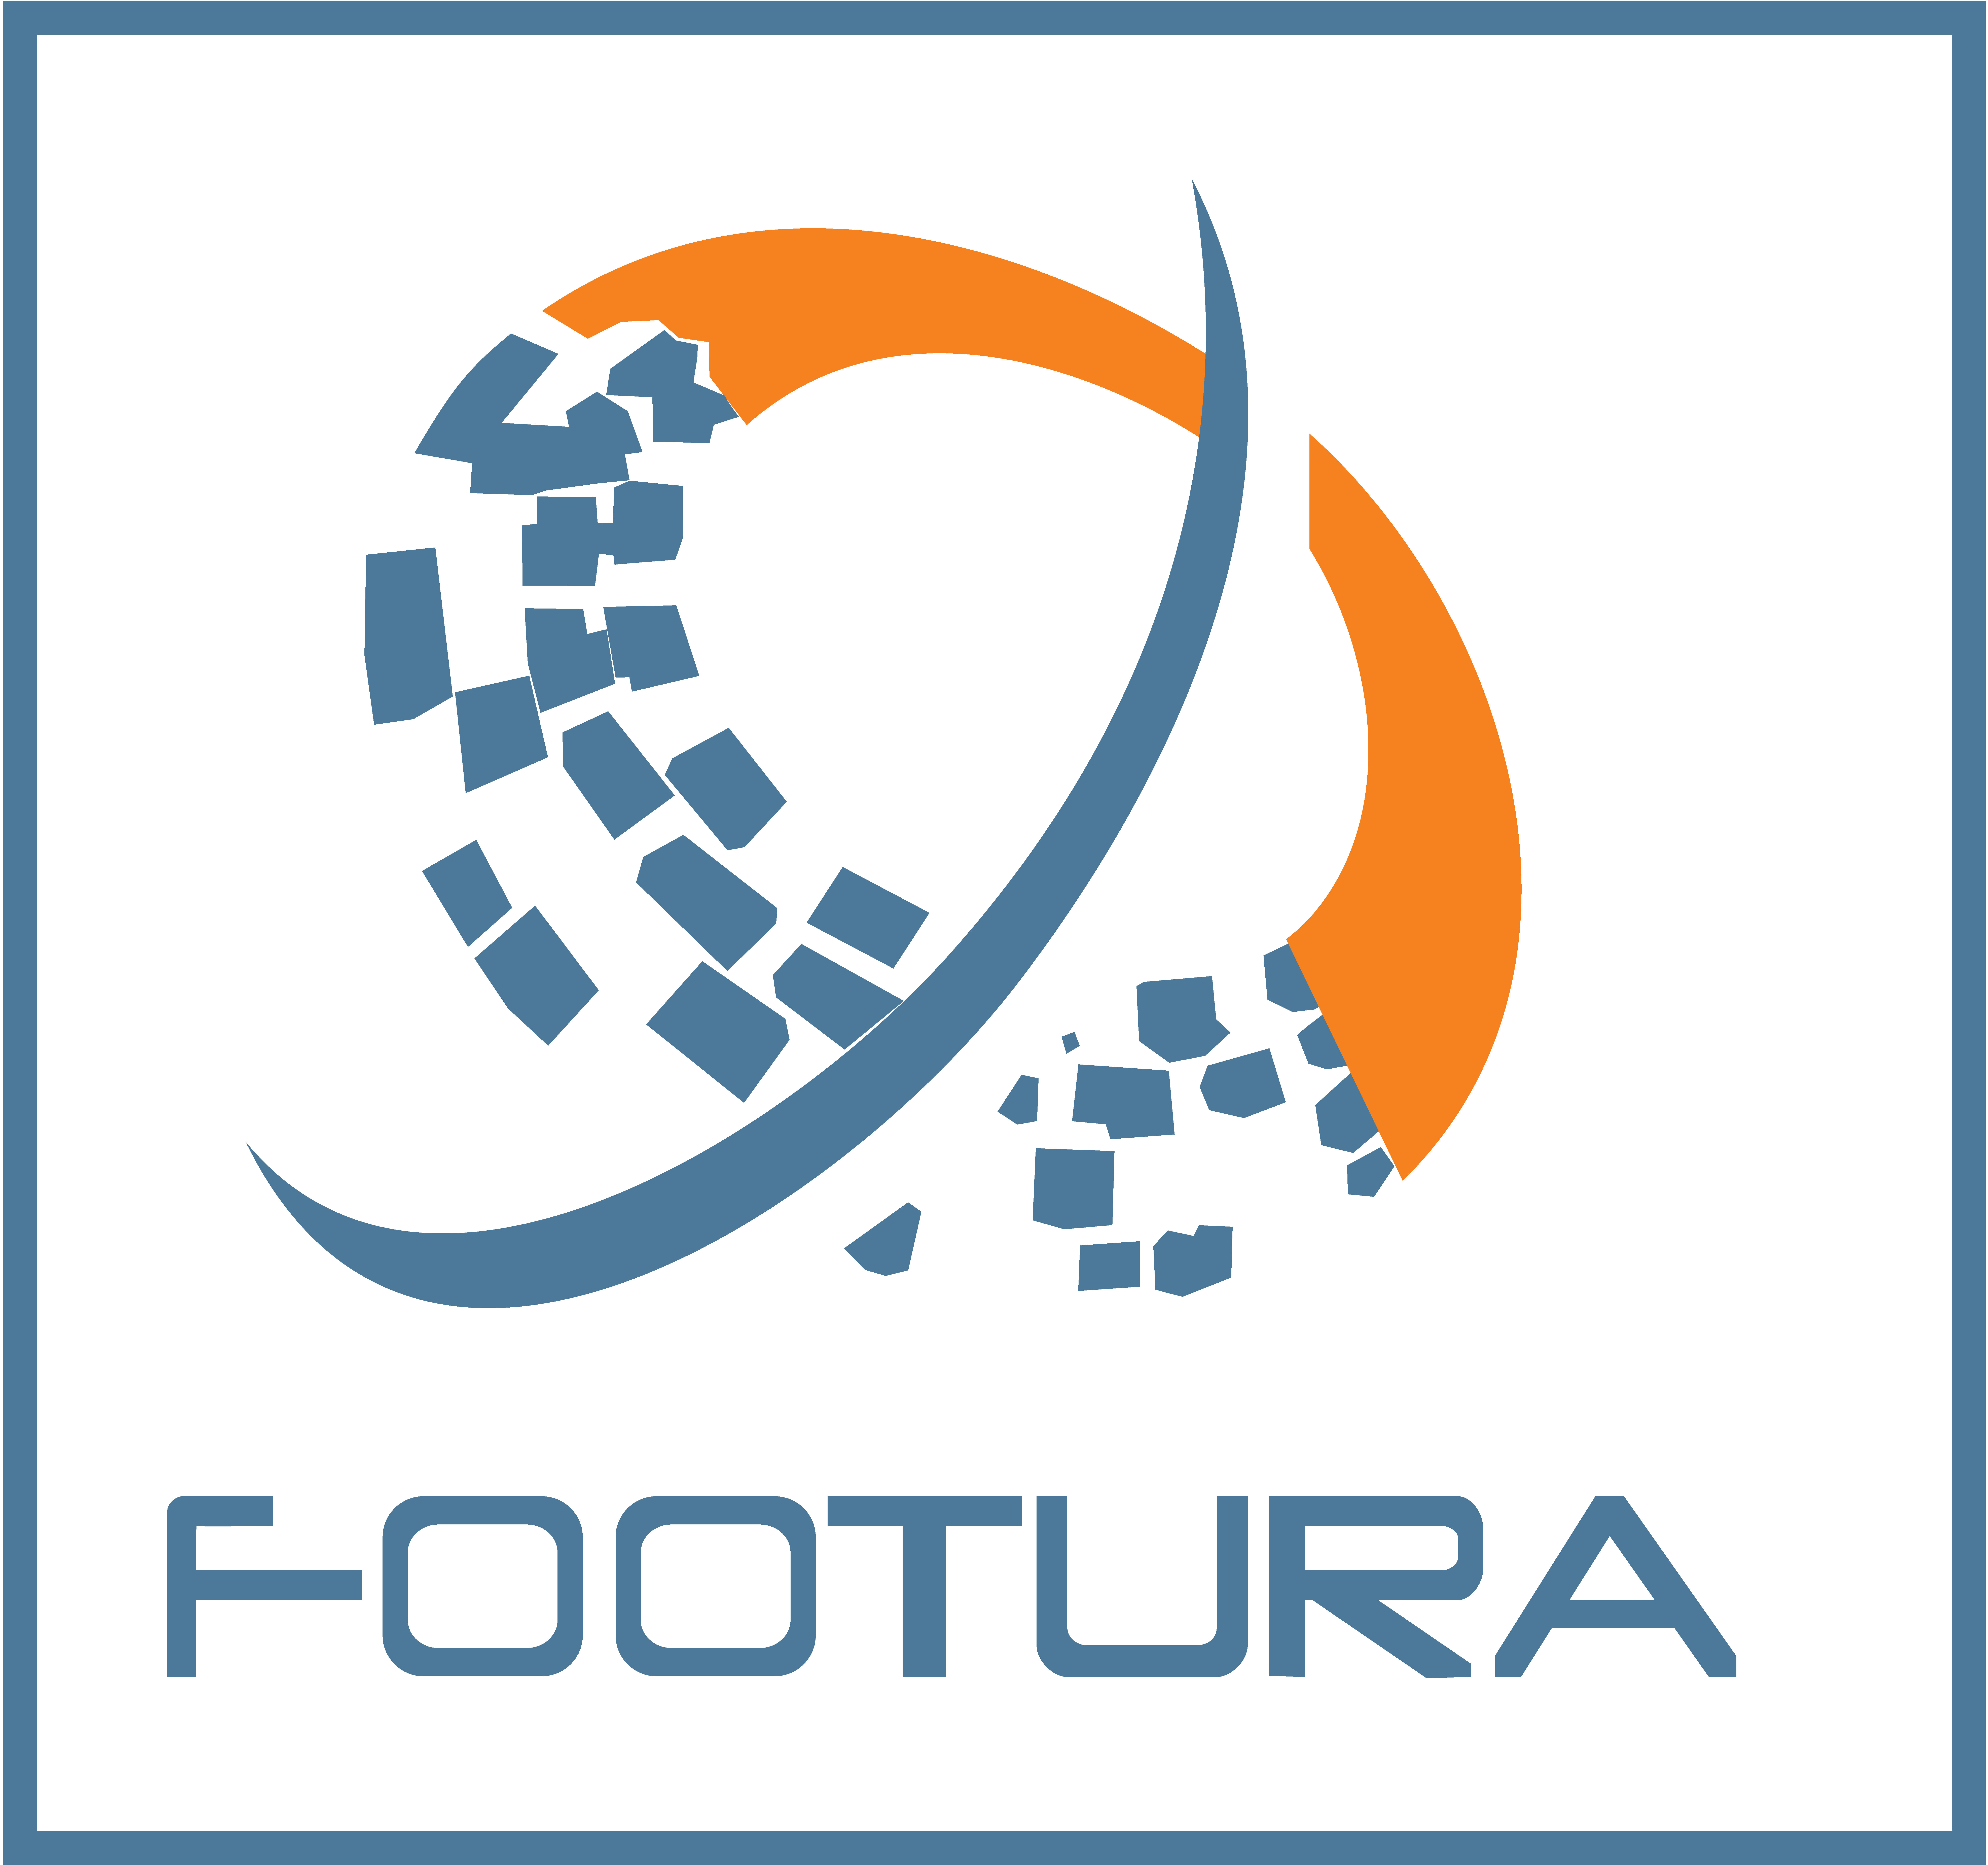 Association Footura